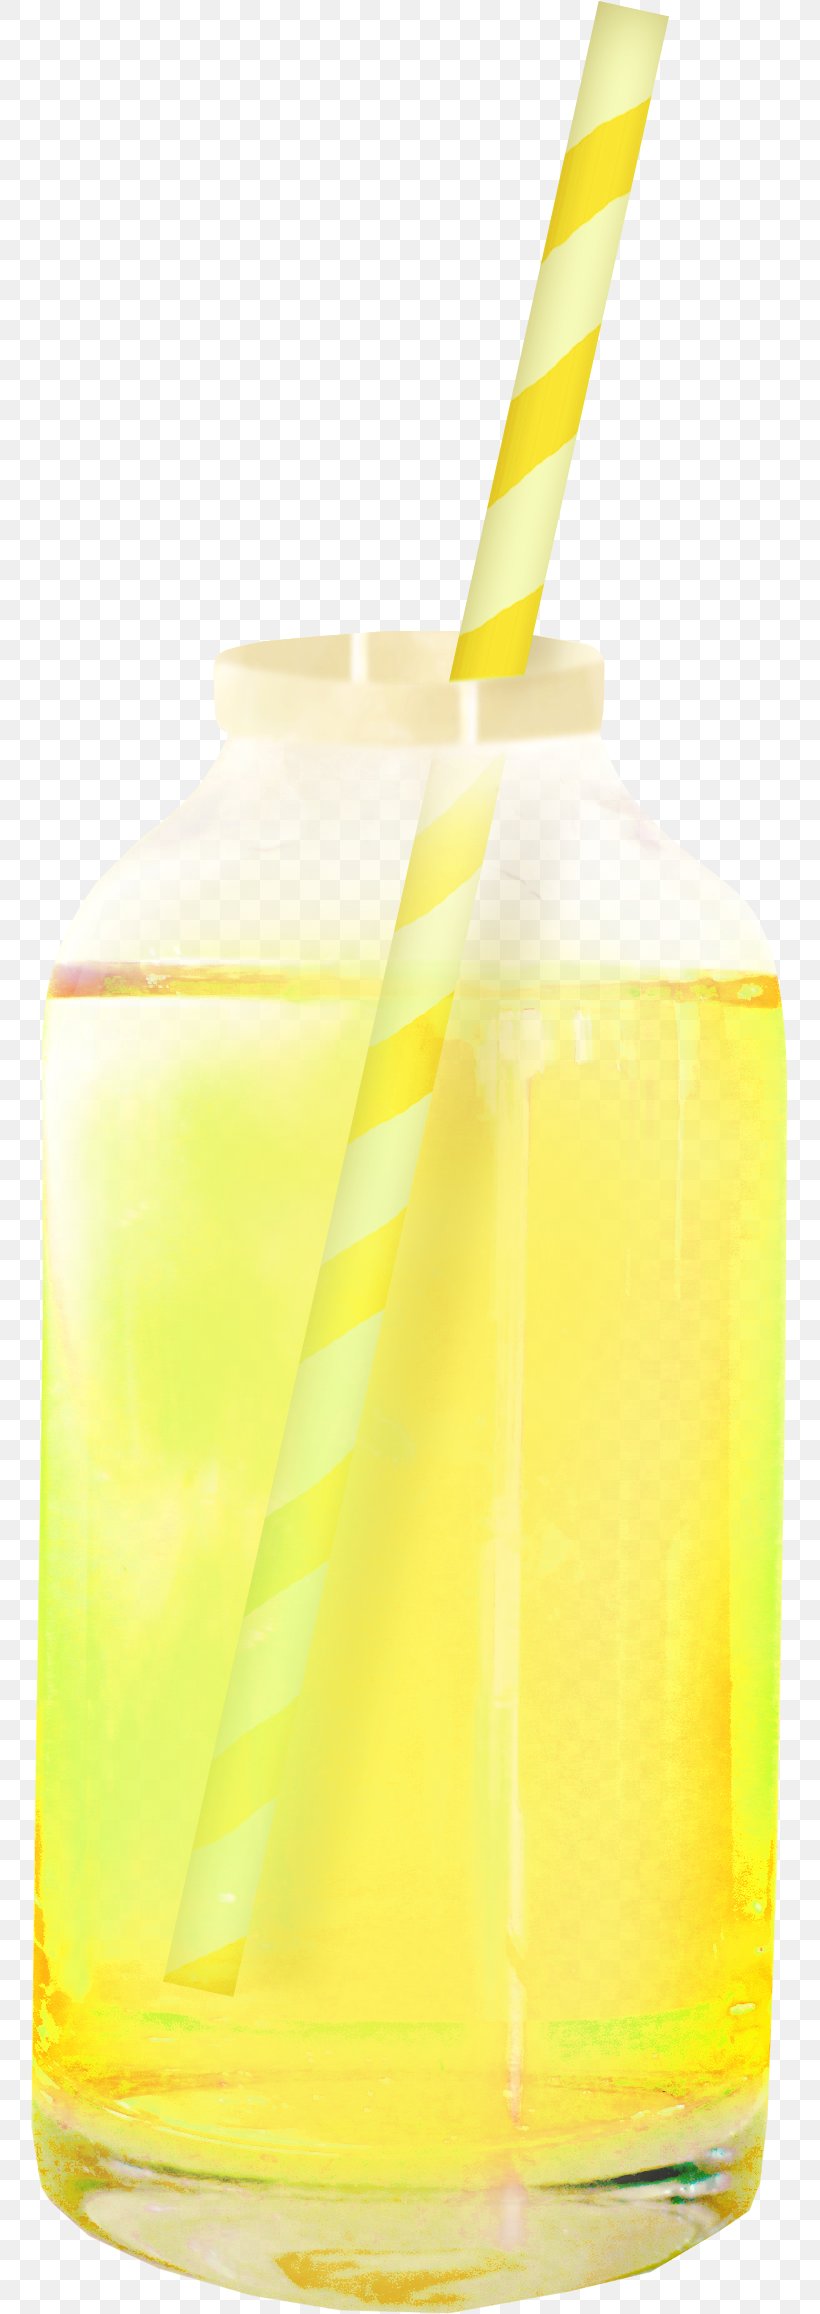 Harvey Wallbanger Juice Orange Drink Lemonade Non-alcoholic Drink, PNG, 757x2314px, Harvey Wallbanger, Cocktail, Cup, Drink, Juice Download Free